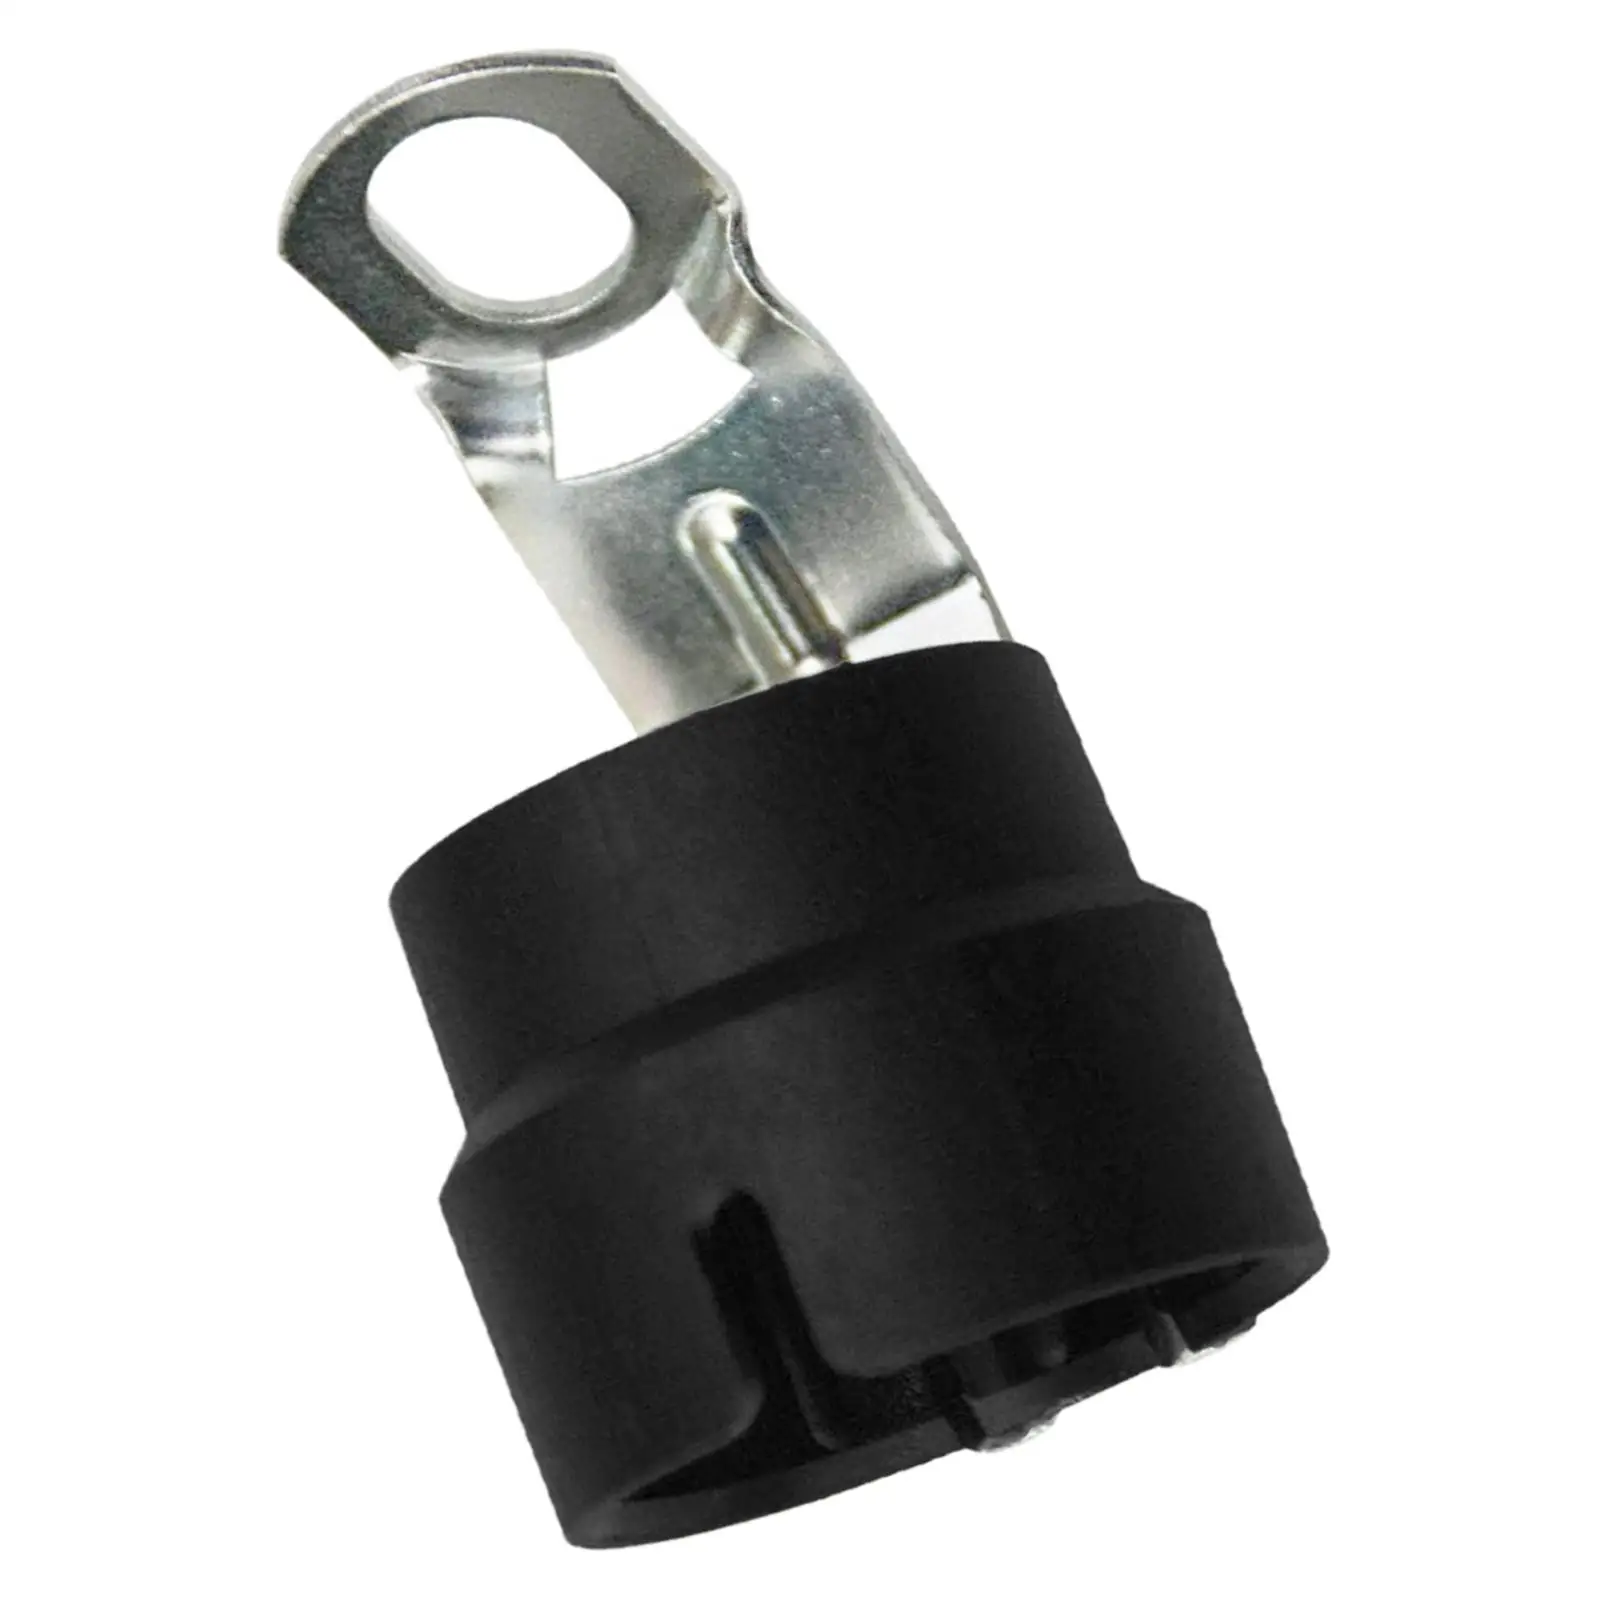 Portable Trailer Plug Holder Connector Trailer Plug Bracket Fit for Car RV